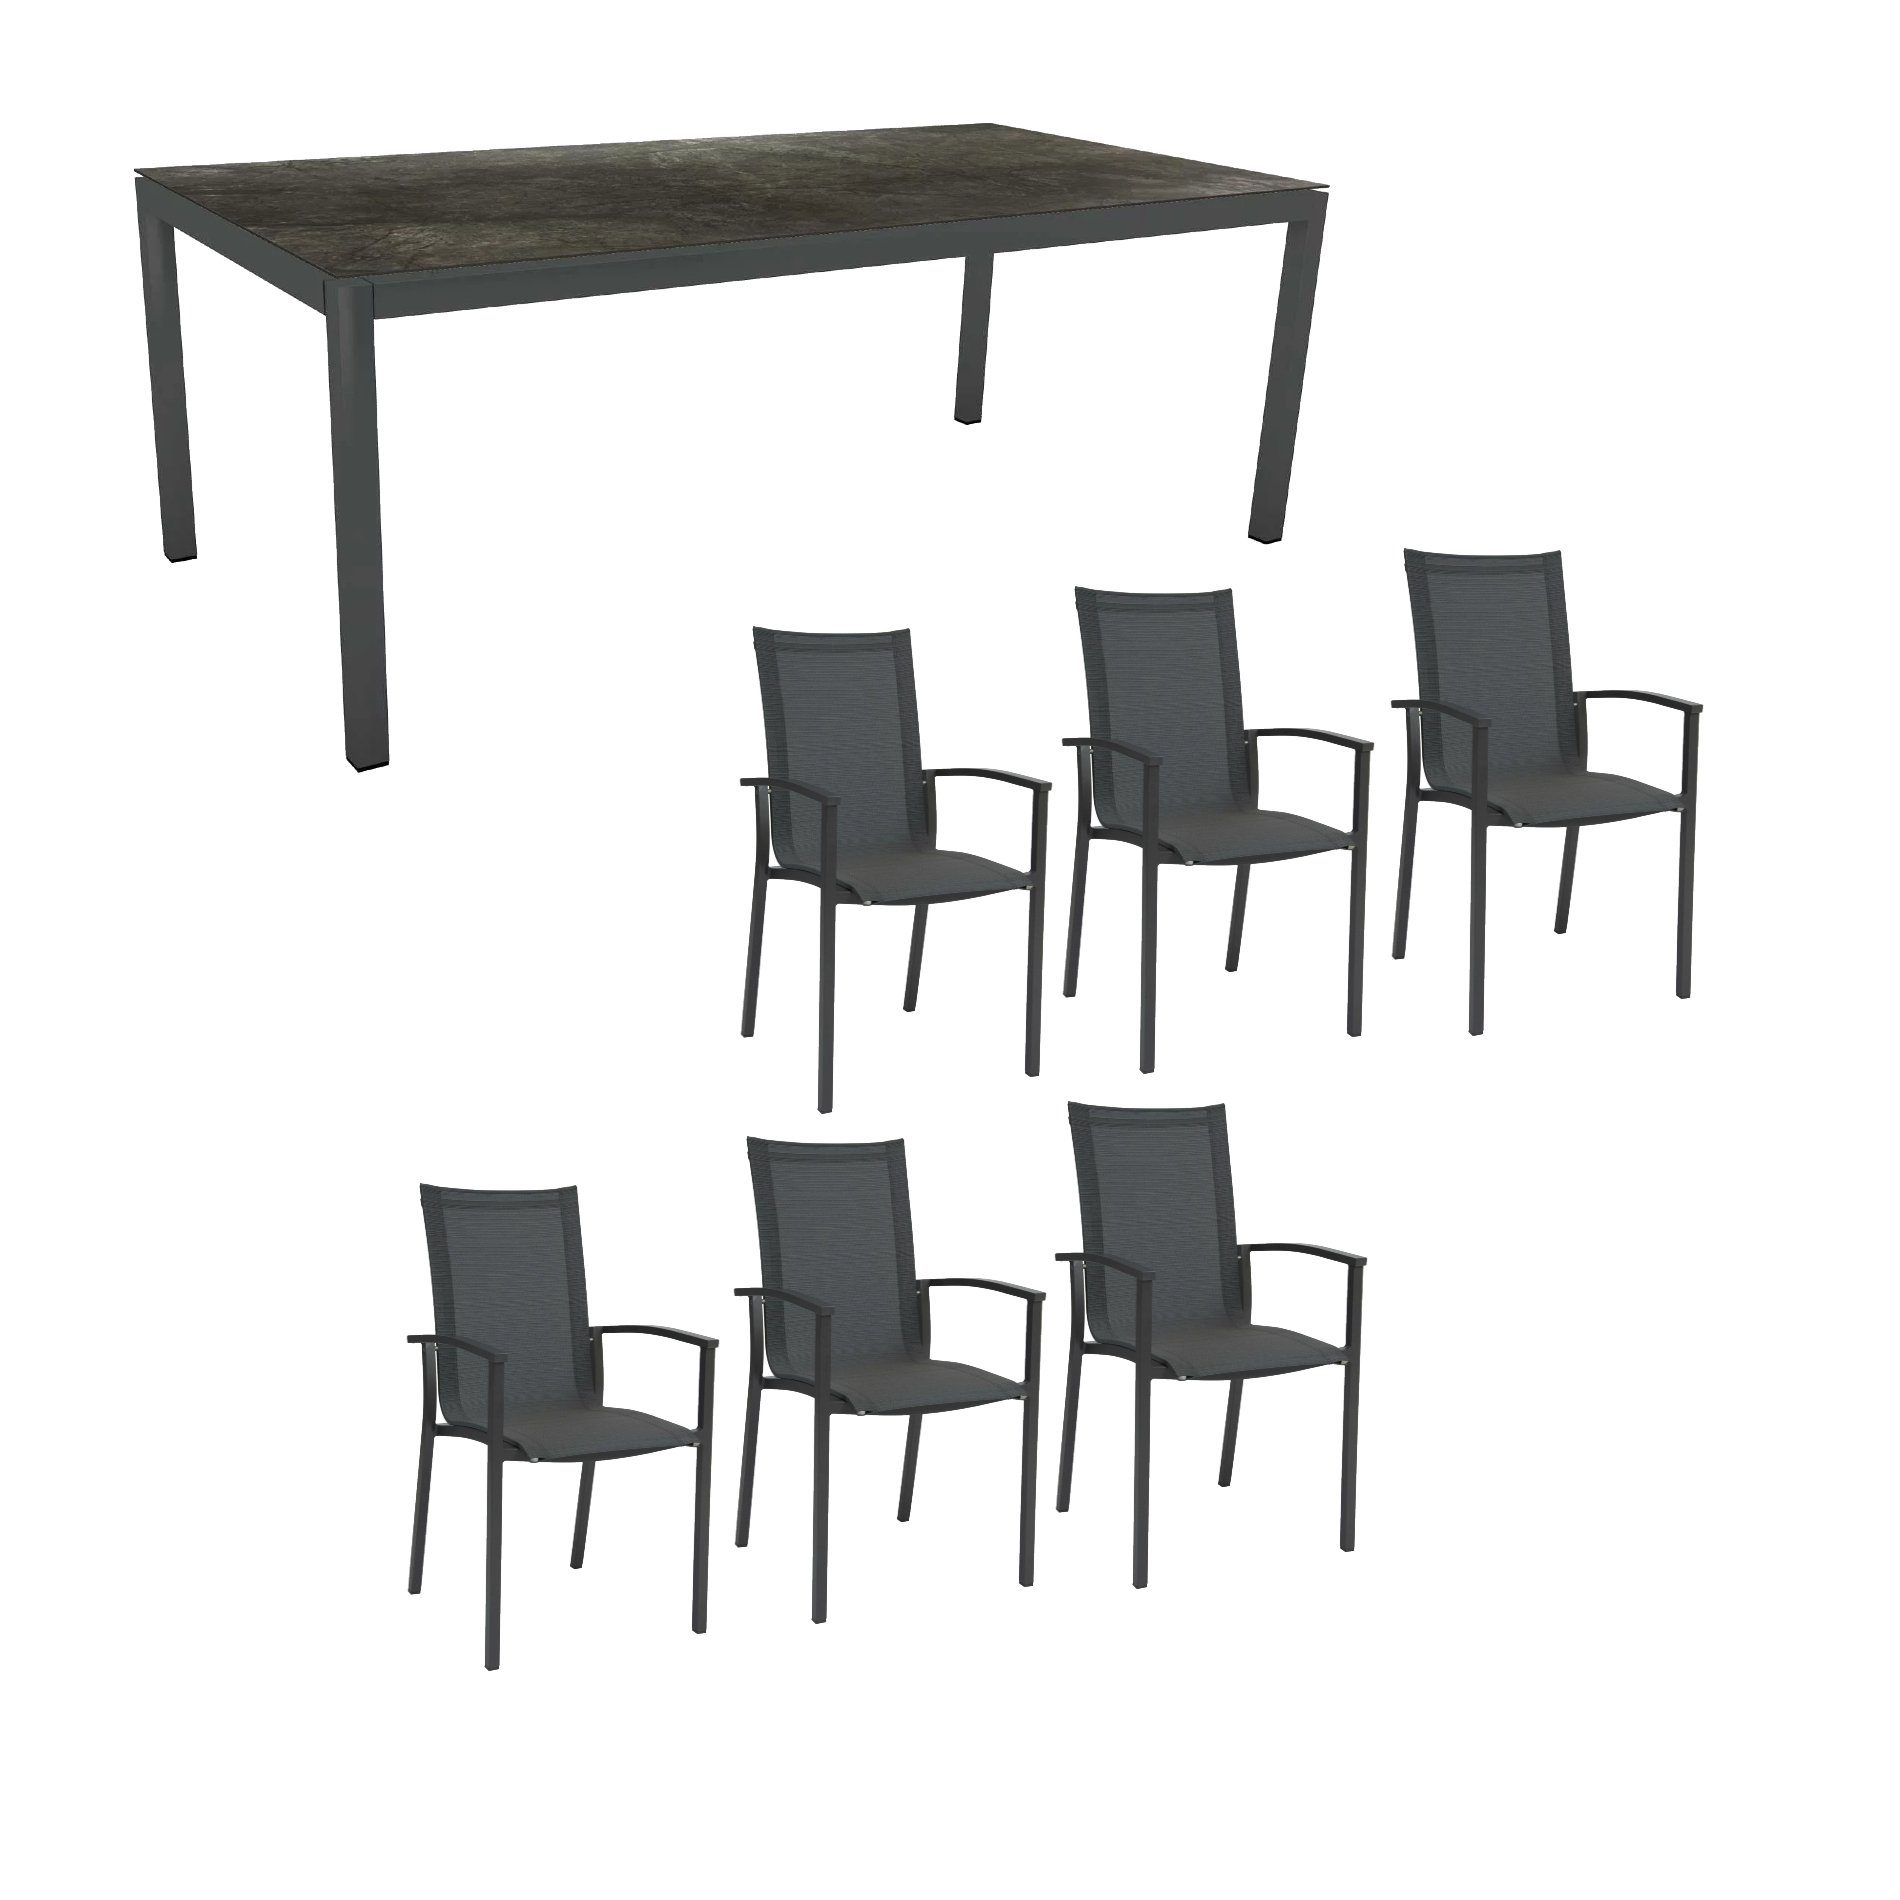 Stern Gartenmöbel-Set "Evoee", Gestelle Aluminium anthrazit, Tischplatte HPL Dark Marble 200x100 cm, Sitz- und Rückenfläche Textilgewebe karbonfarben, Armlehnen anthrazit